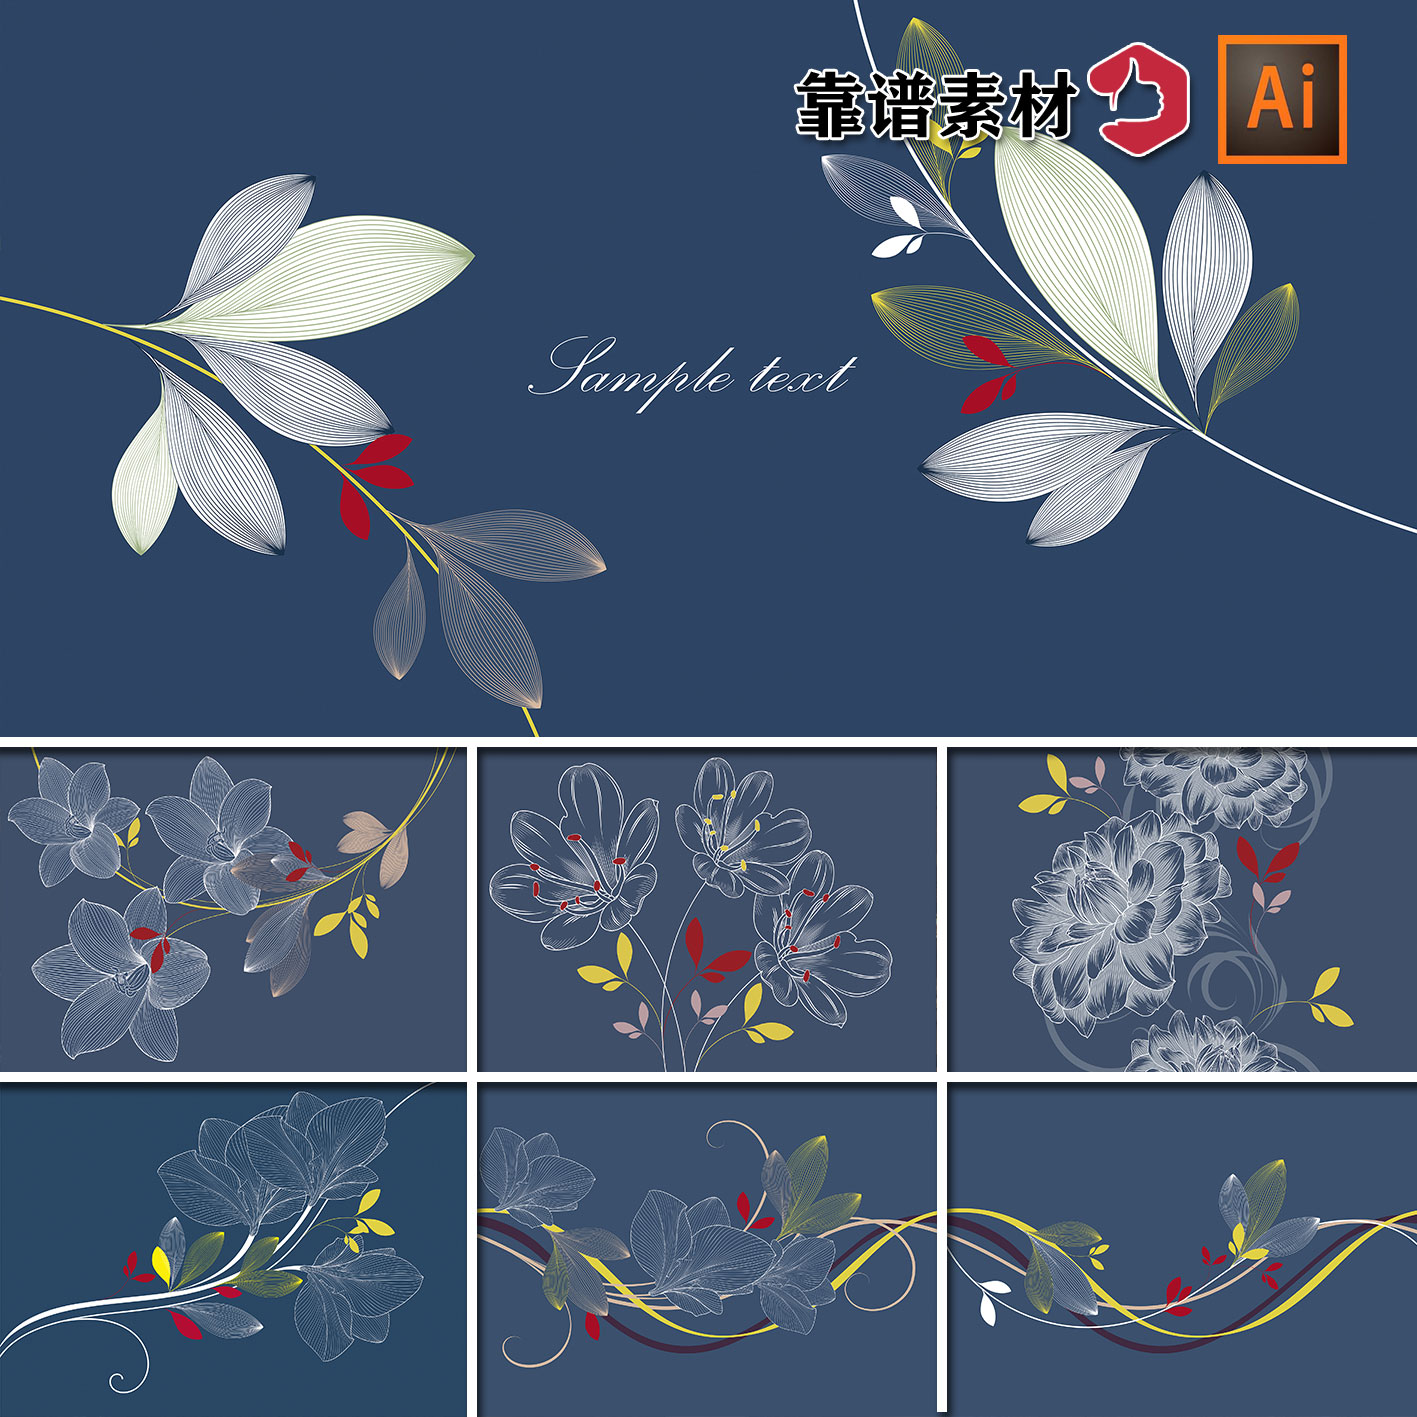 精美鲜花纹线描线条百合花朵花纹花边背景墙封面AI矢量设计素材